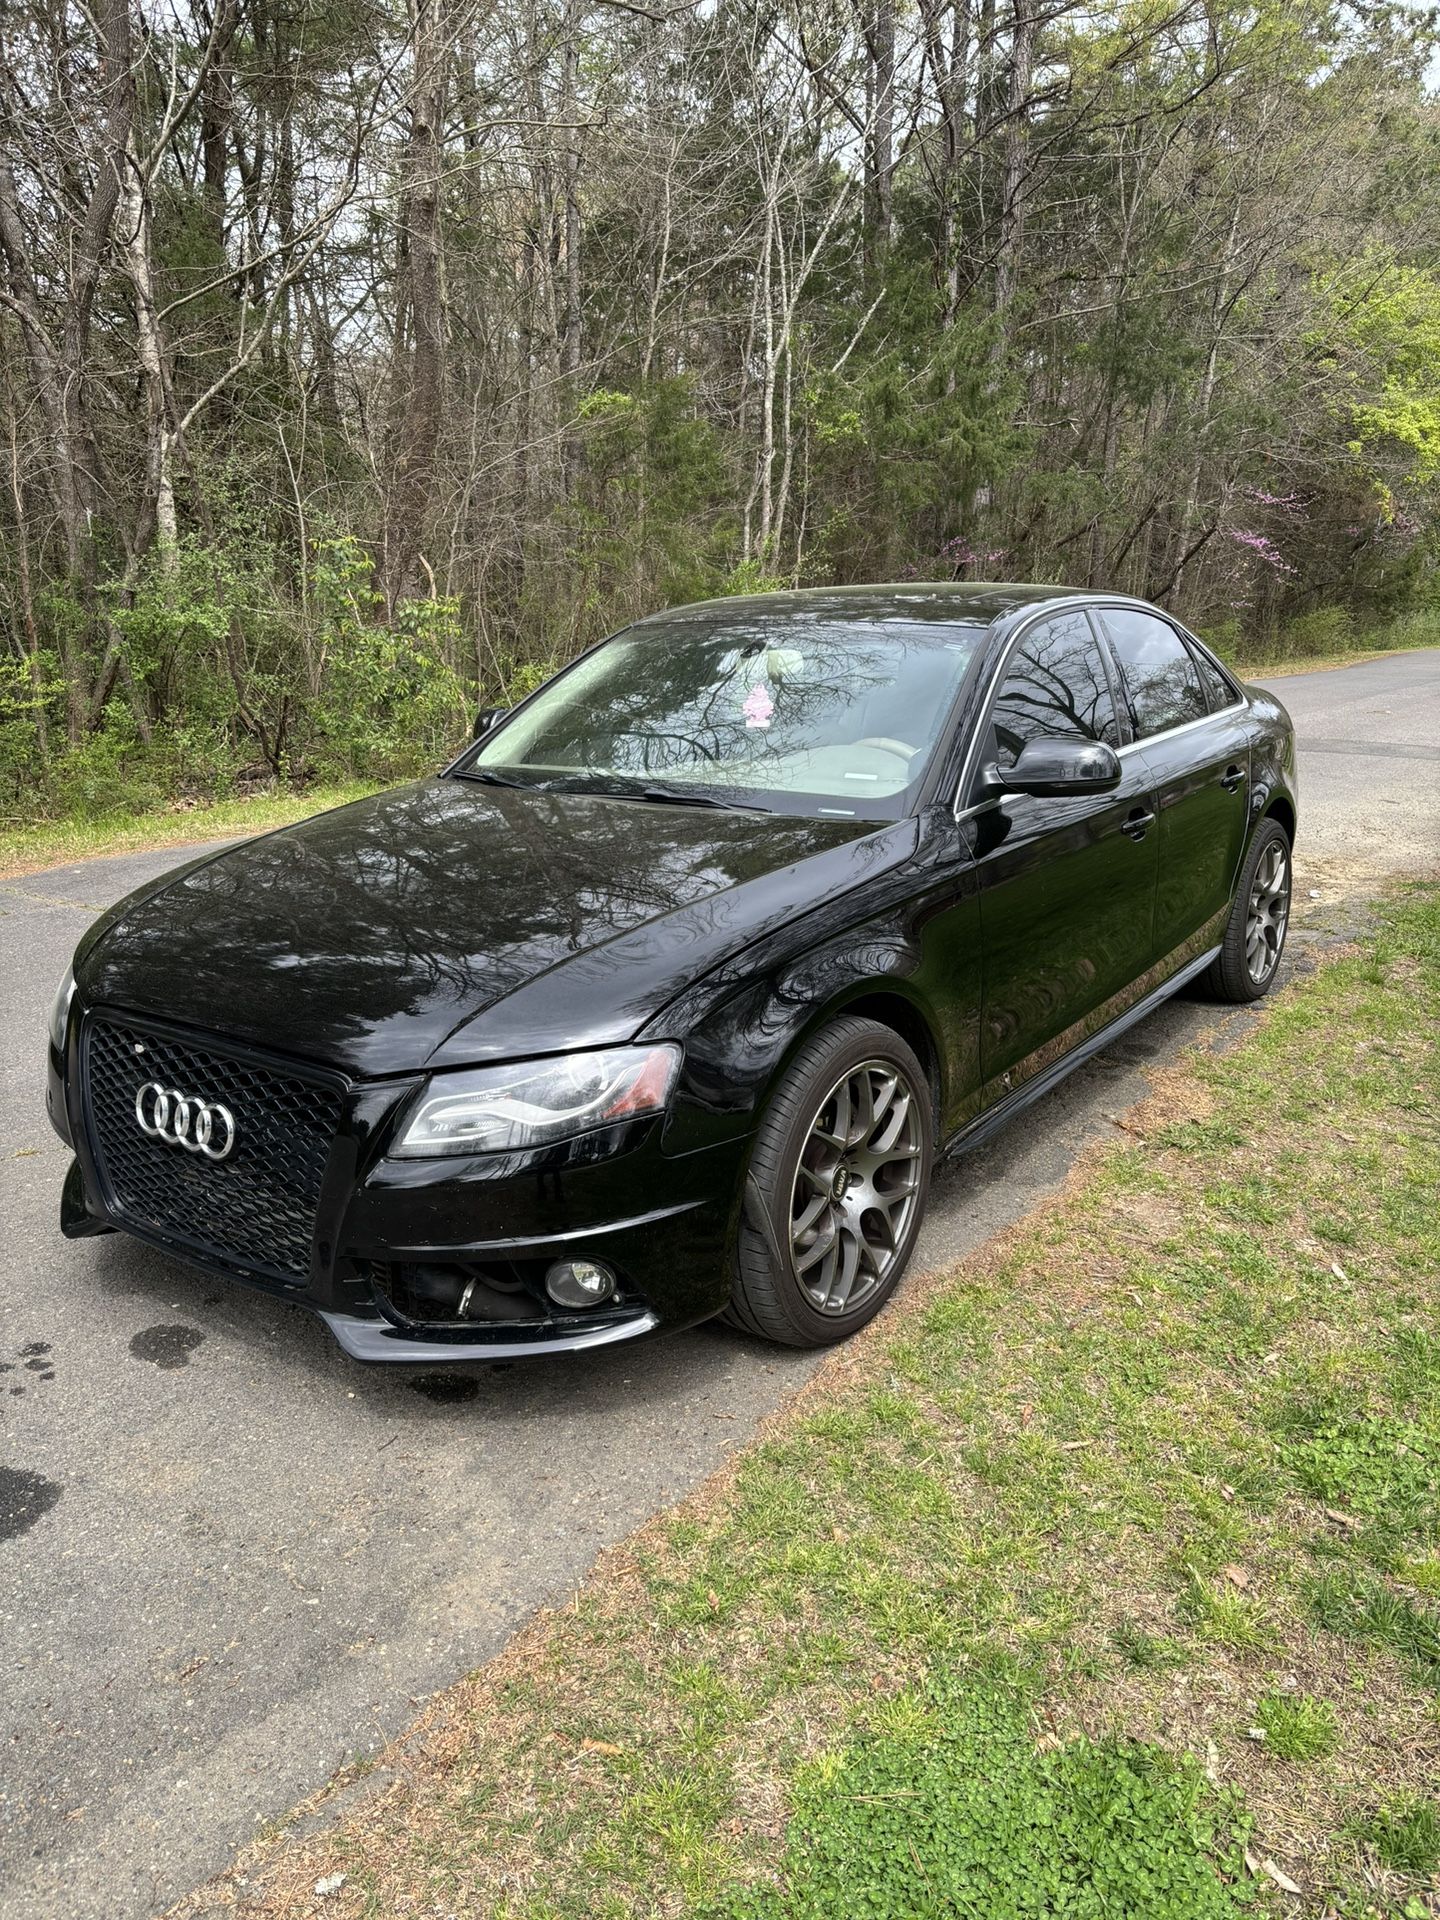 2012 Audi S4